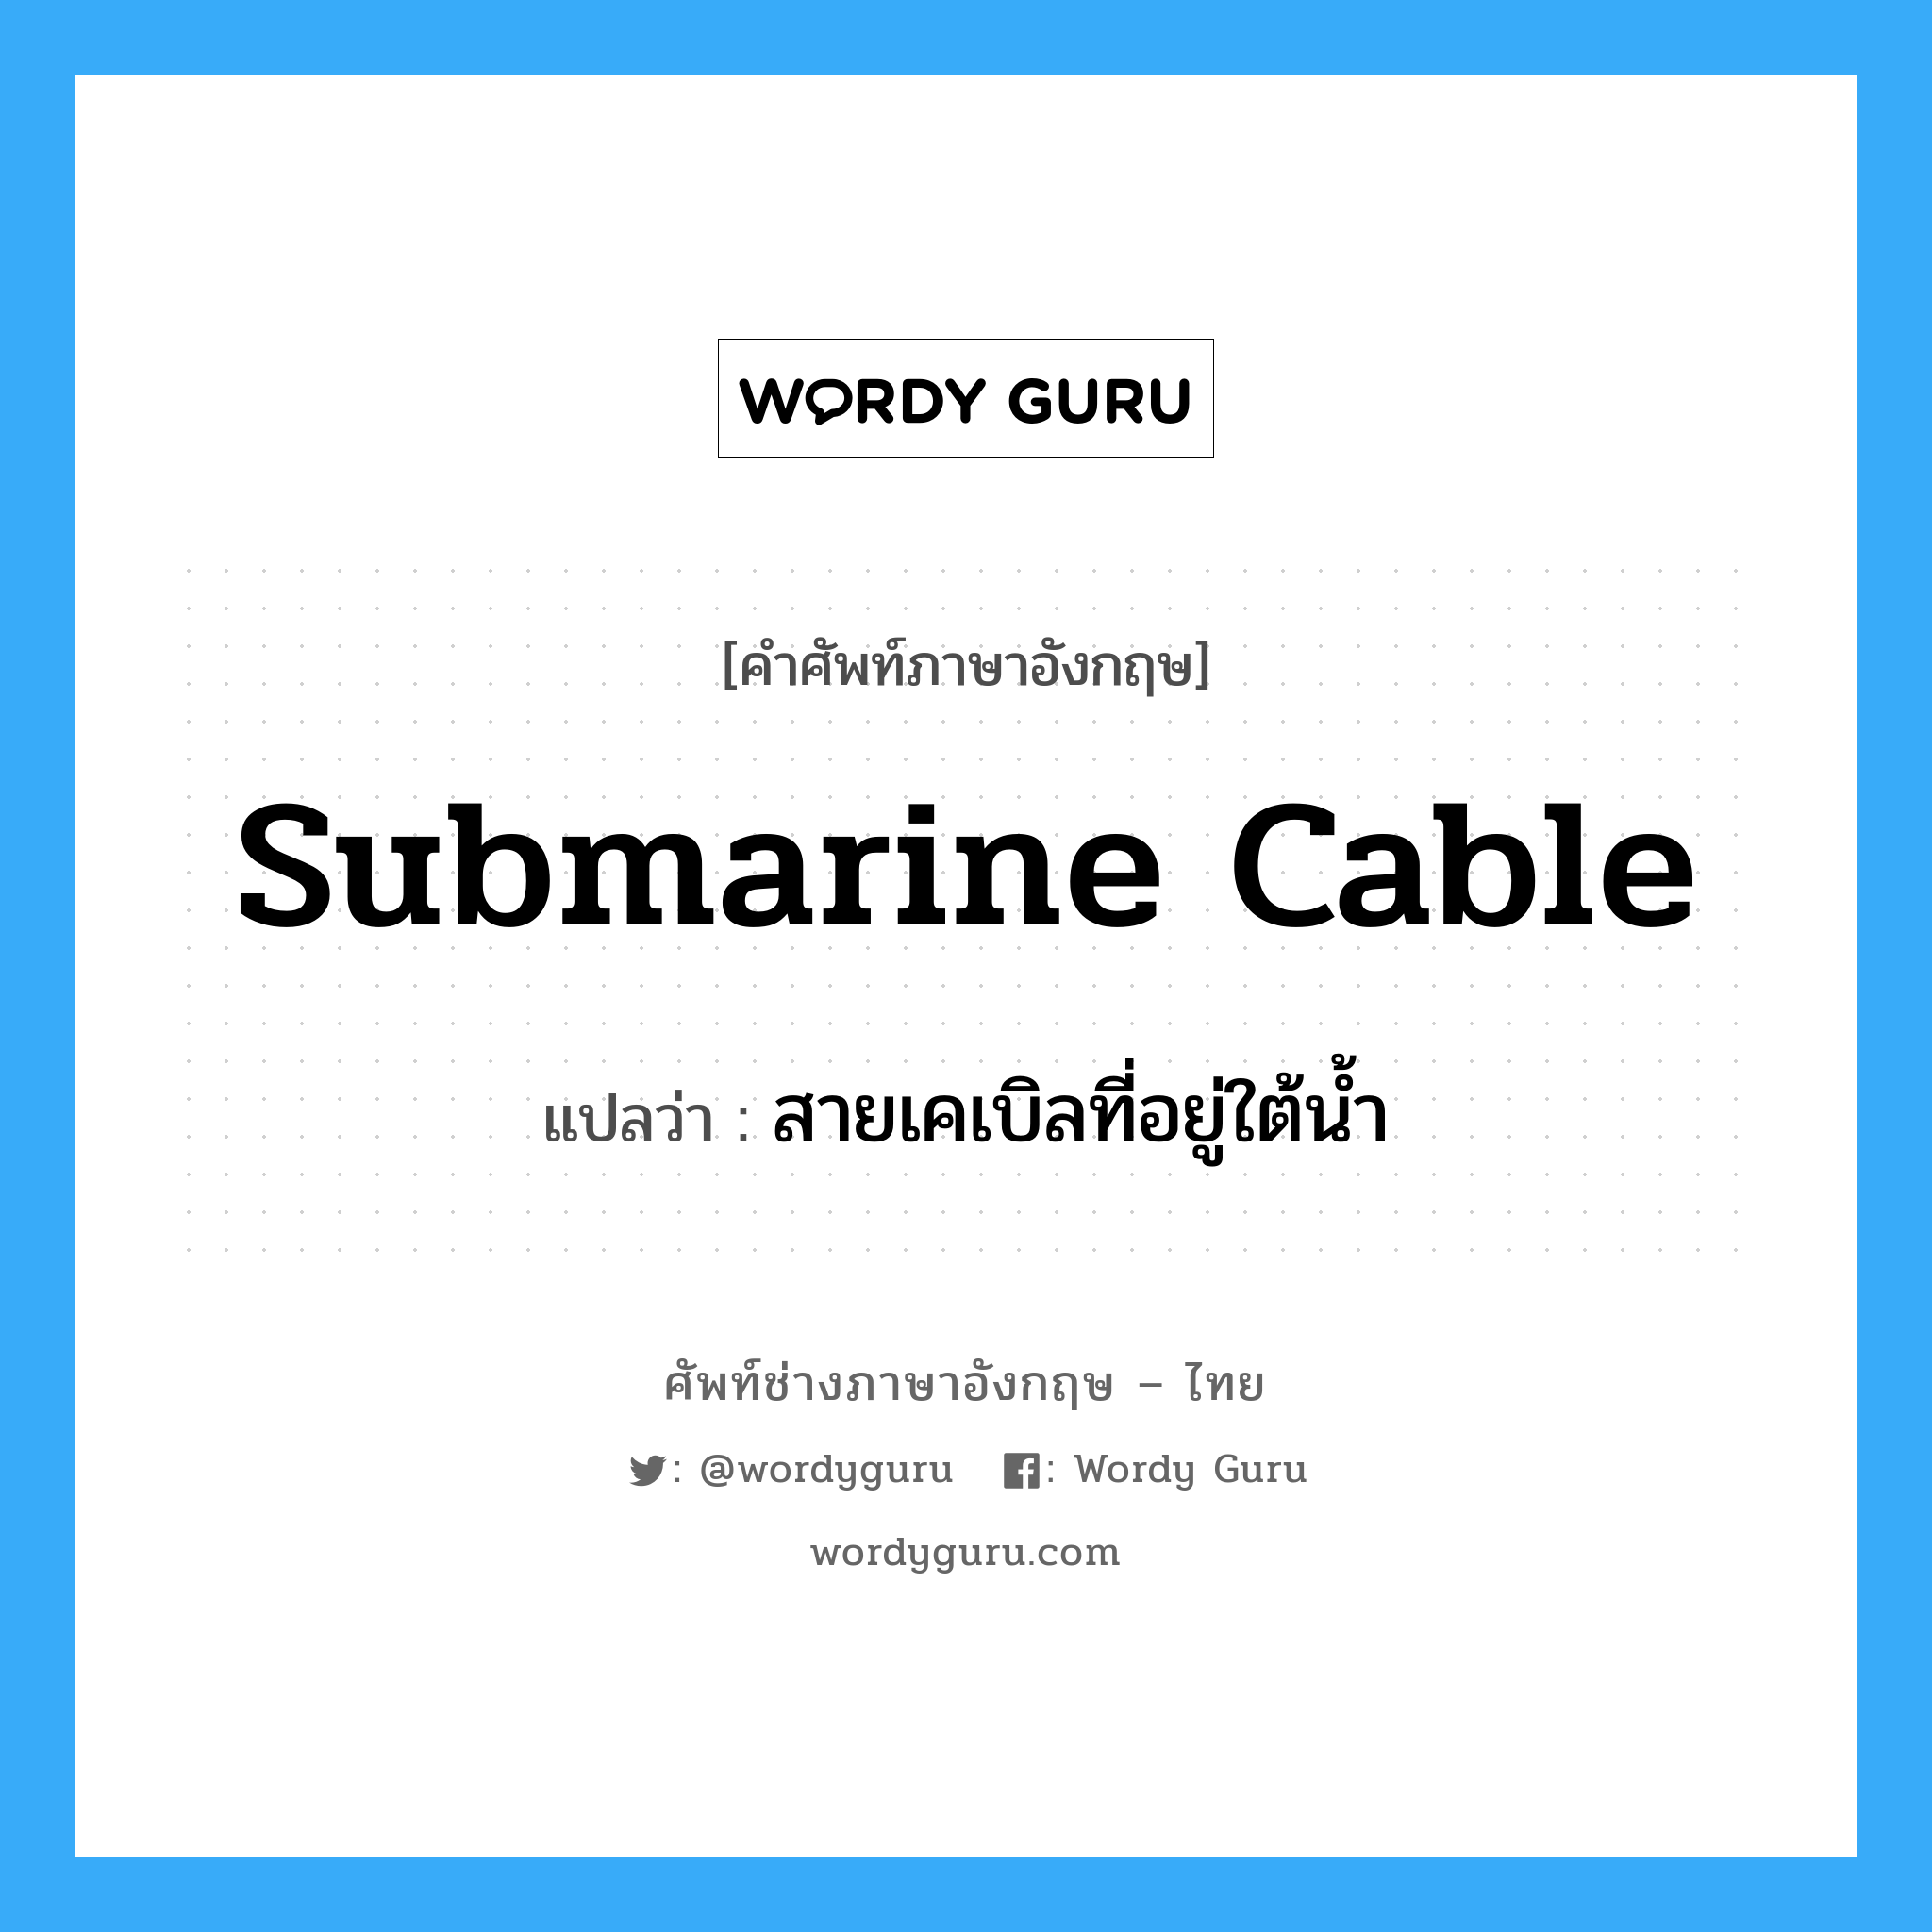 สายเคเบิลที่อยู่ใต้น้ำ ภาษาอังกฤษ?, คำศัพท์ช่างภาษาอังกฤษ - ไทย สายเคเบิลที่อยู่ใต้น้ำ คำศัพท์ภาษาอังกฤษ สายเคเบิลที่อยู่ใต้น้ำ แปลว่า submarine cable